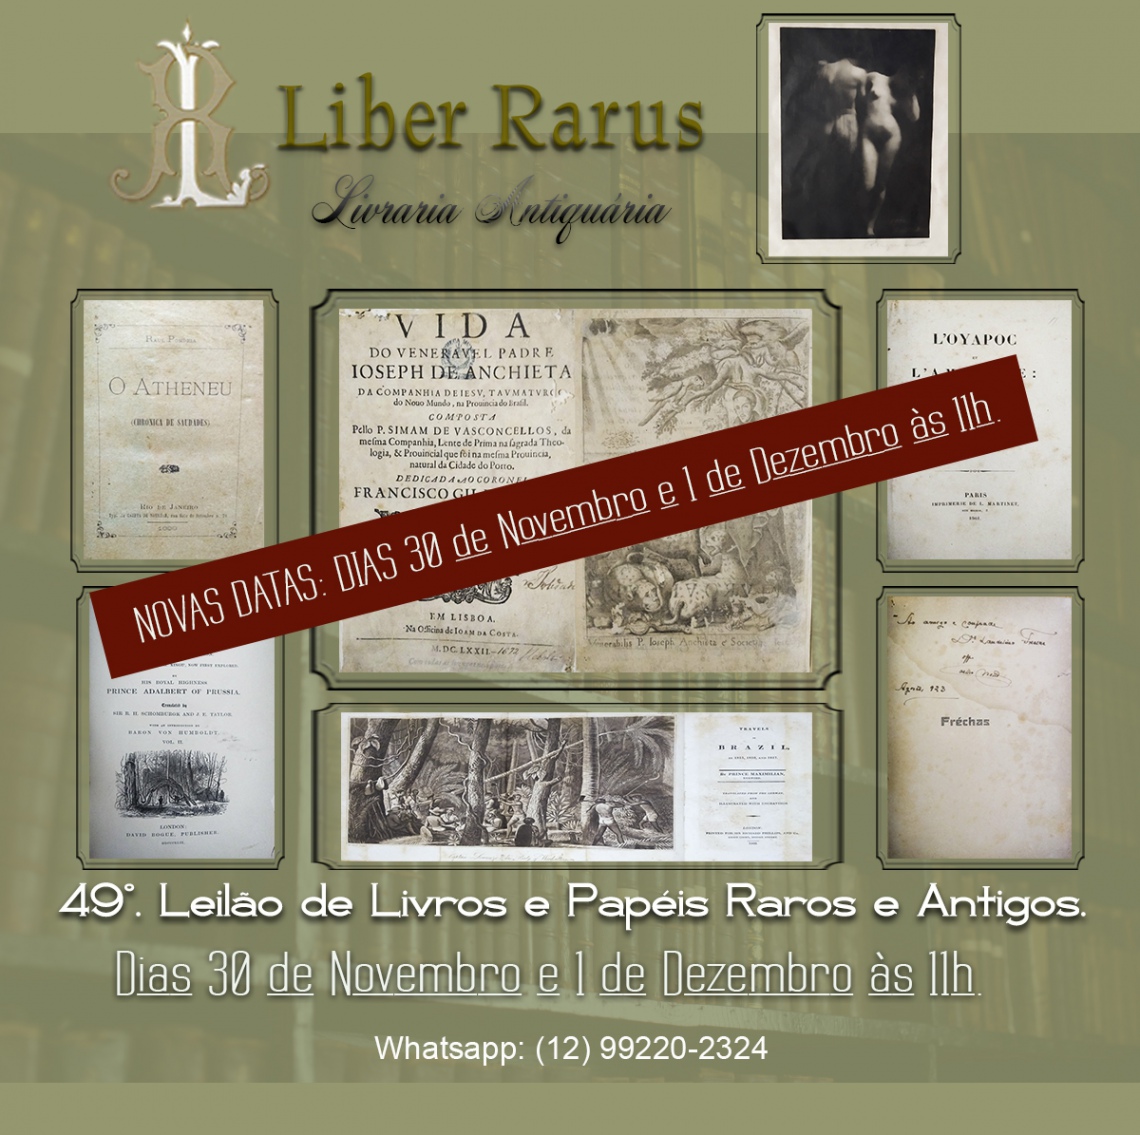 49º Leilão de Livros e Papéis Raros e Antigos - Liber Rarus - Mudança de data: 30/11 e 1/12 às 11h00